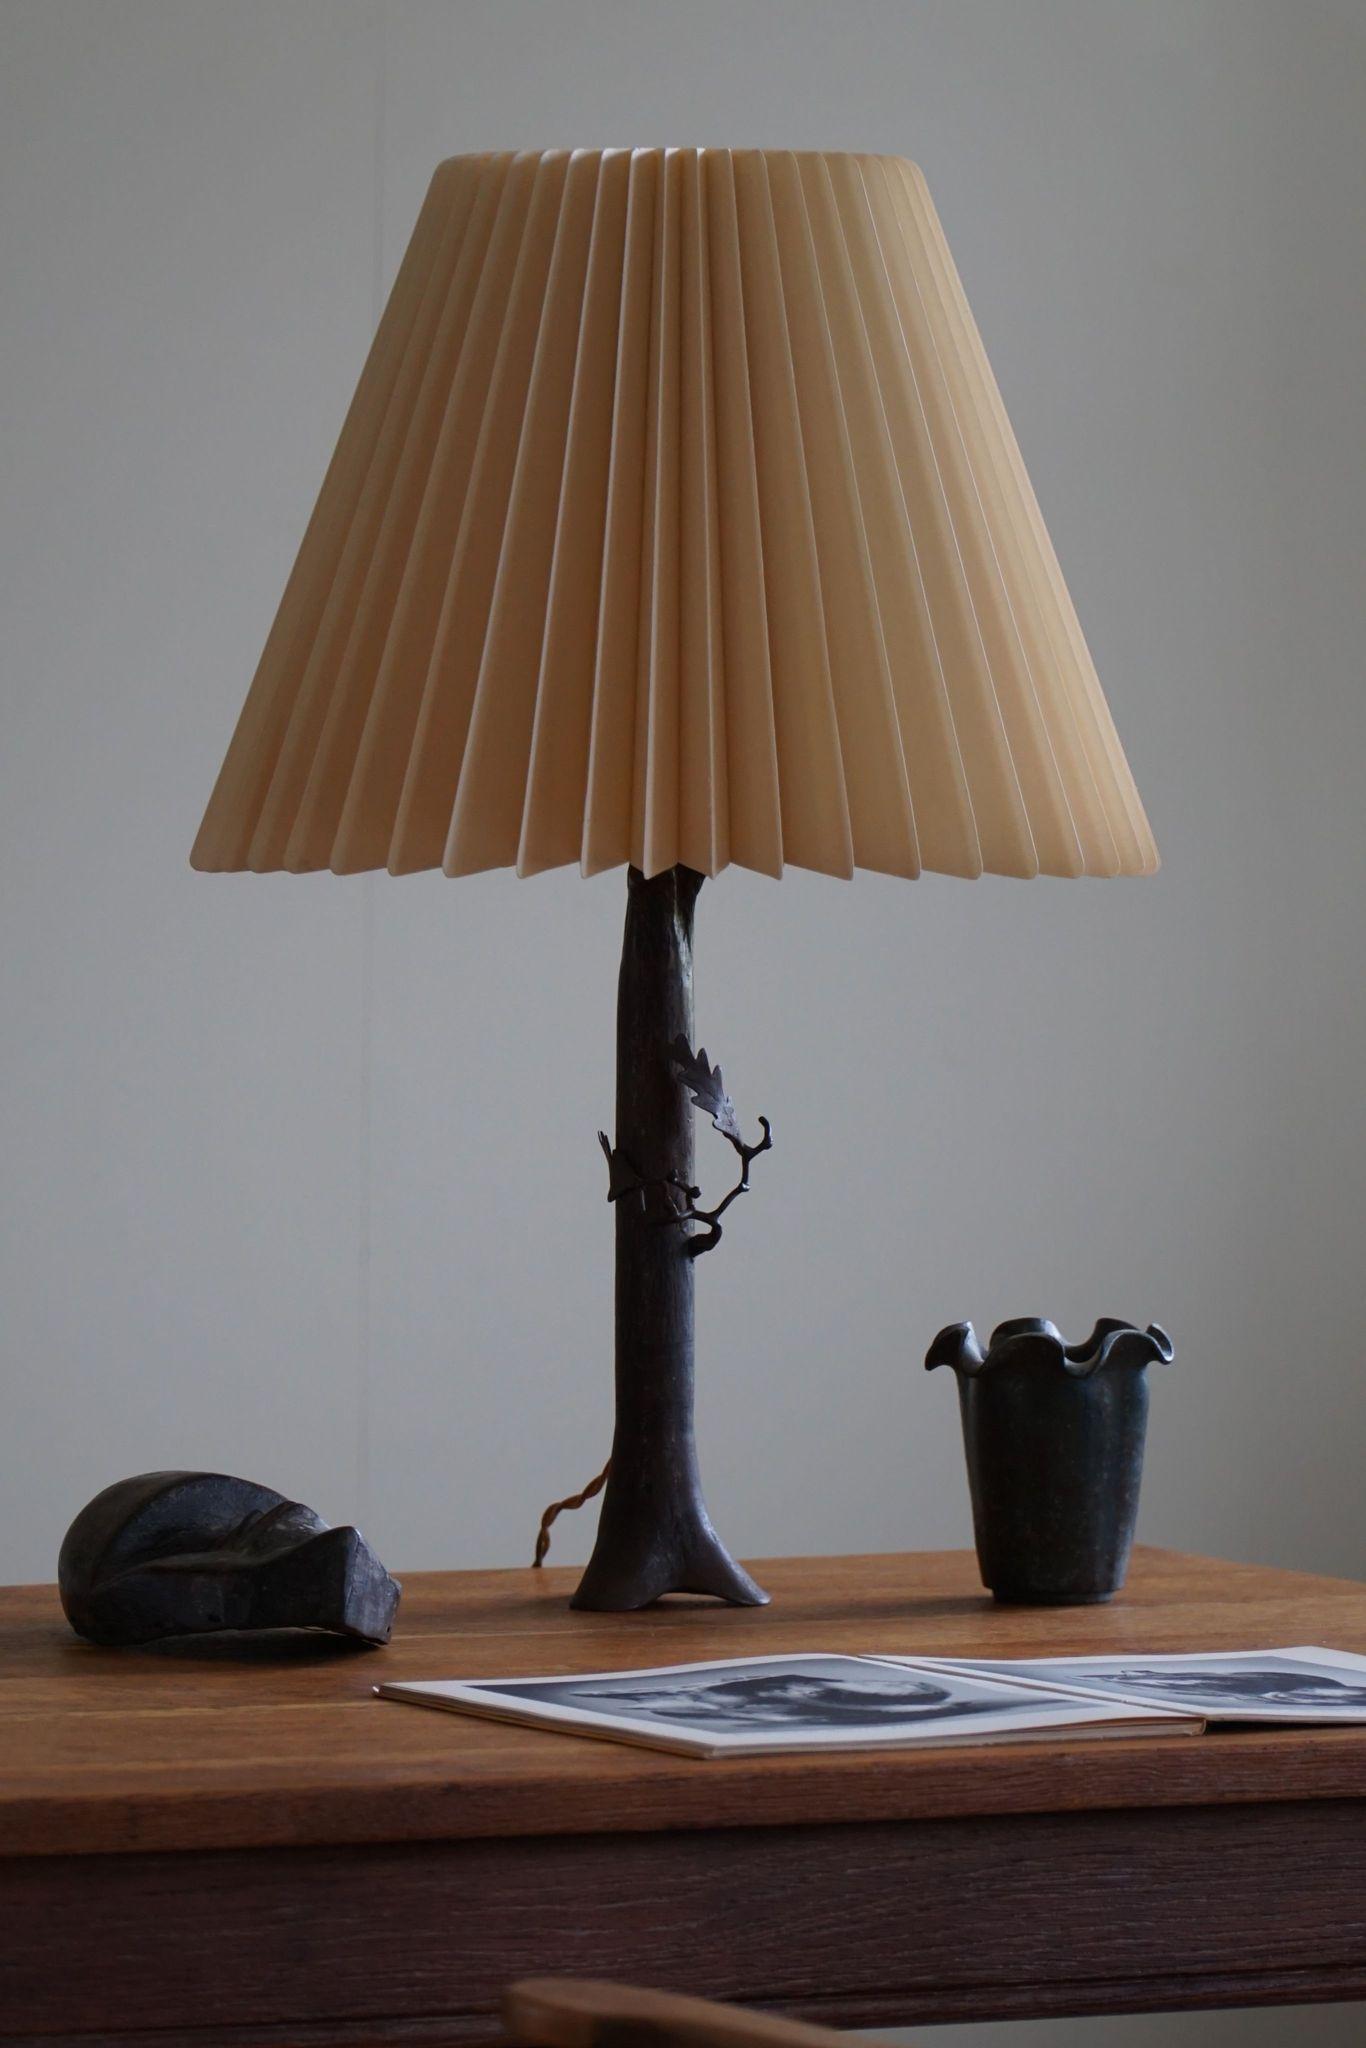 Voici une charmante lampe de table danoise Jugendstil qui capture l'essence de la beauté de la nature dans un artisanat de bronze exquis. Fabriquée par les mains habiles de Johannes Christensen dans les années 1920, cette lampe est une délicieuse